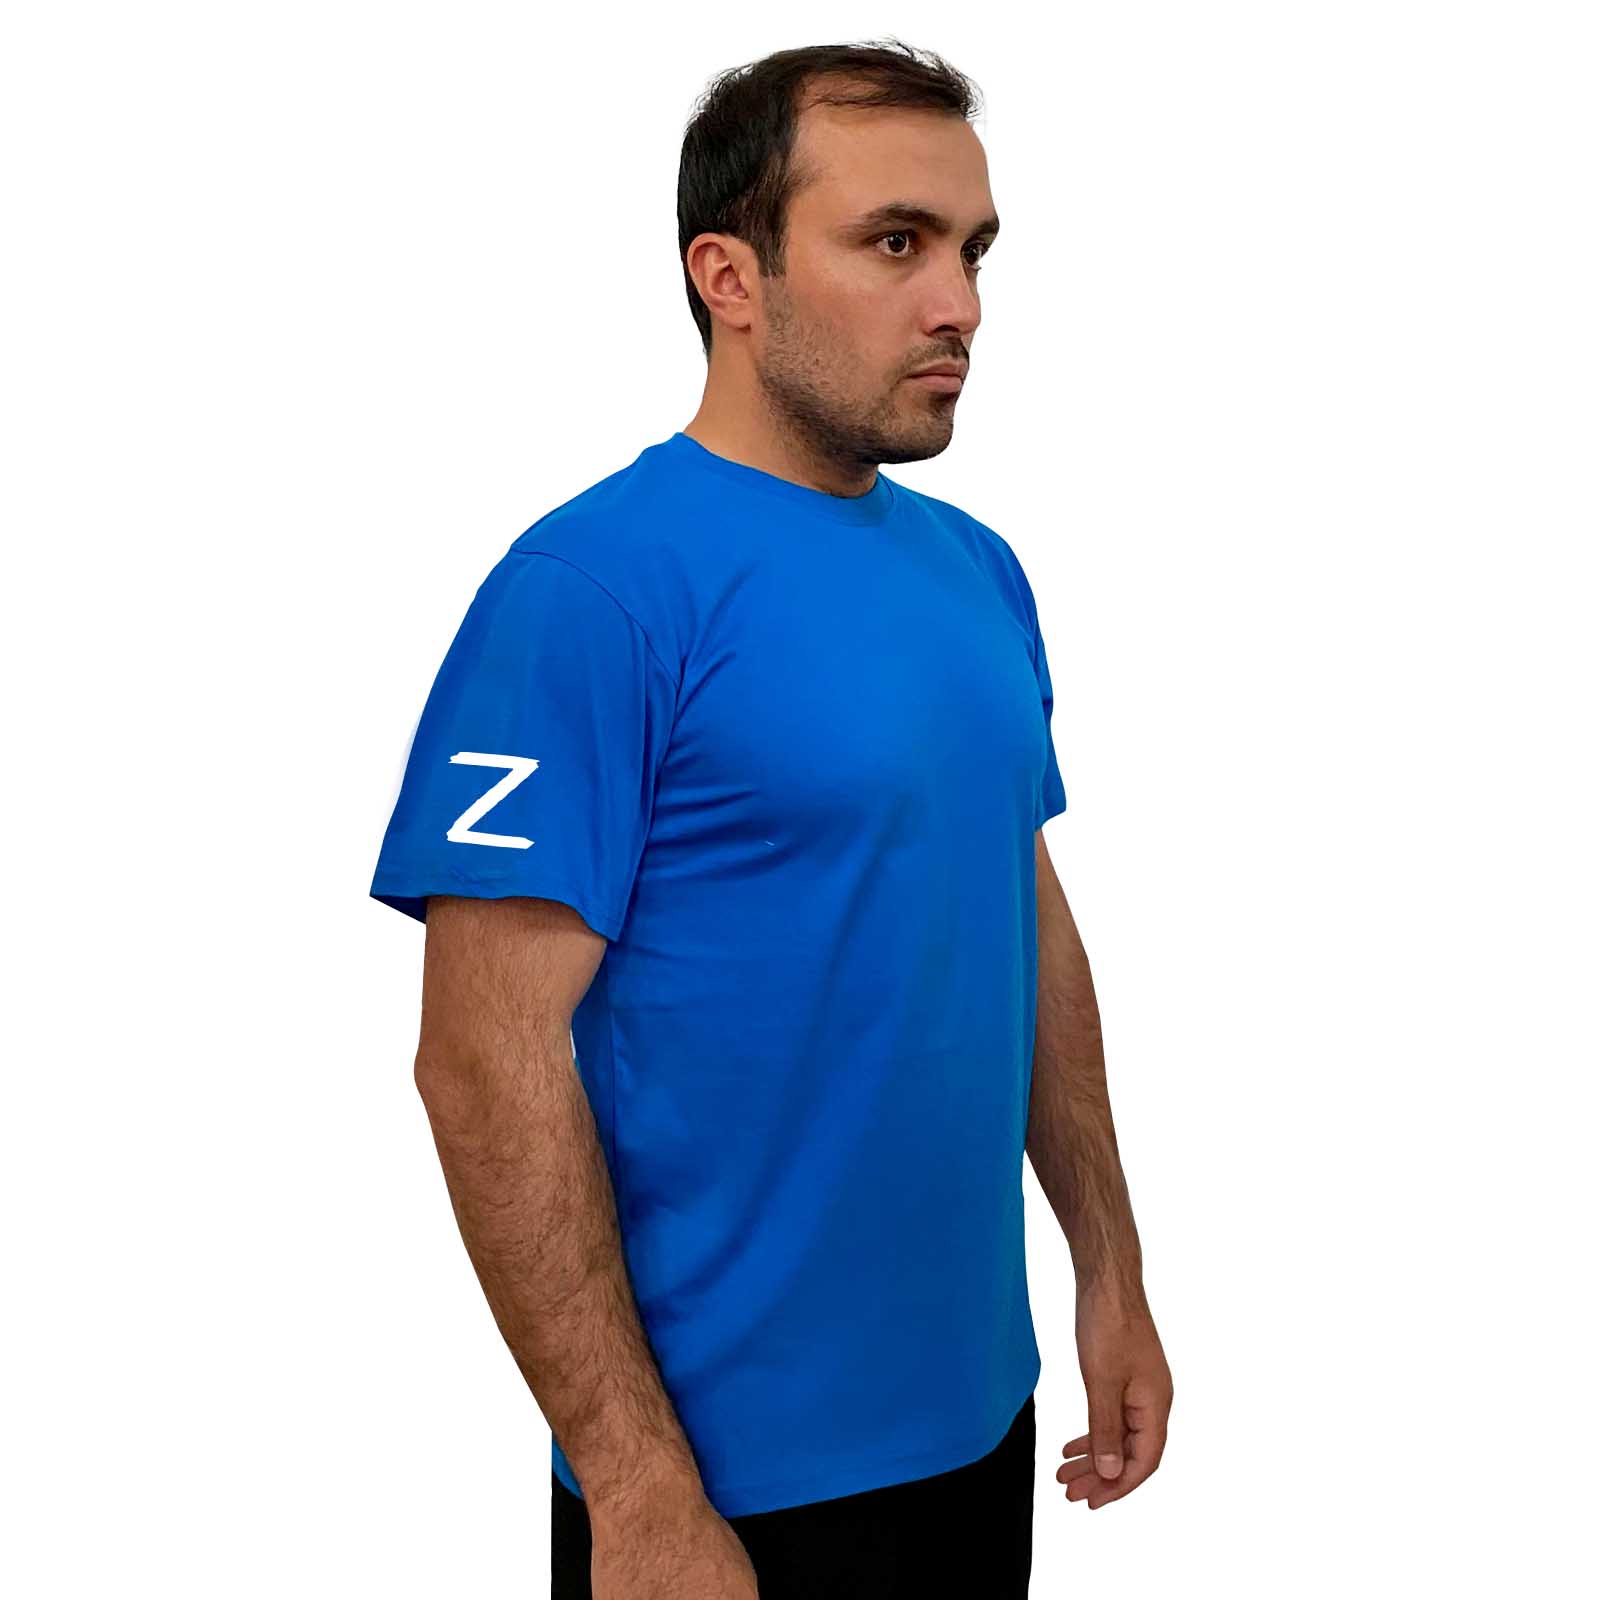 Купить мужскую хлопковую футболку с литерой Z выгодно